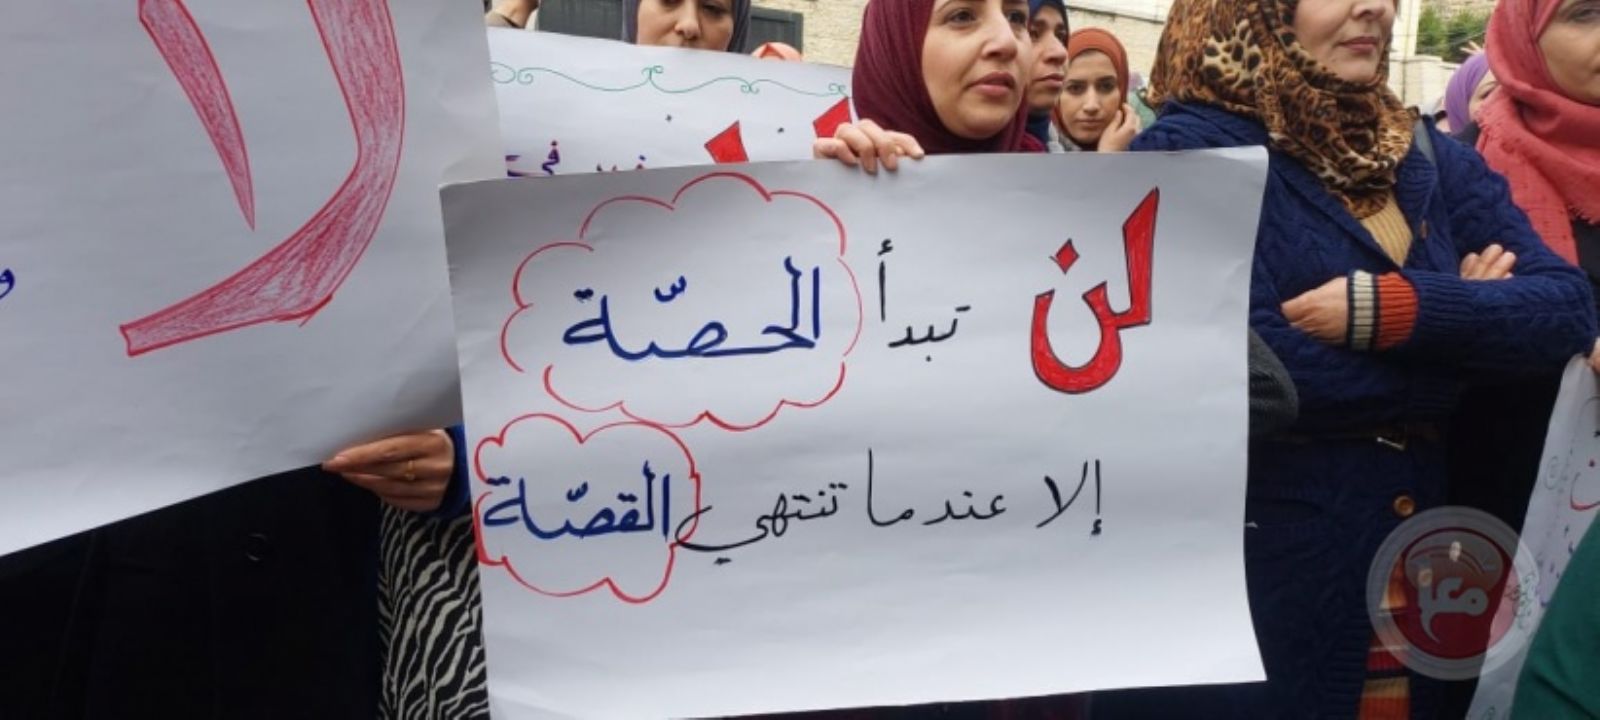 اليوم- اعتصام للمعلمين المضربين أمام مجلس الوزراء